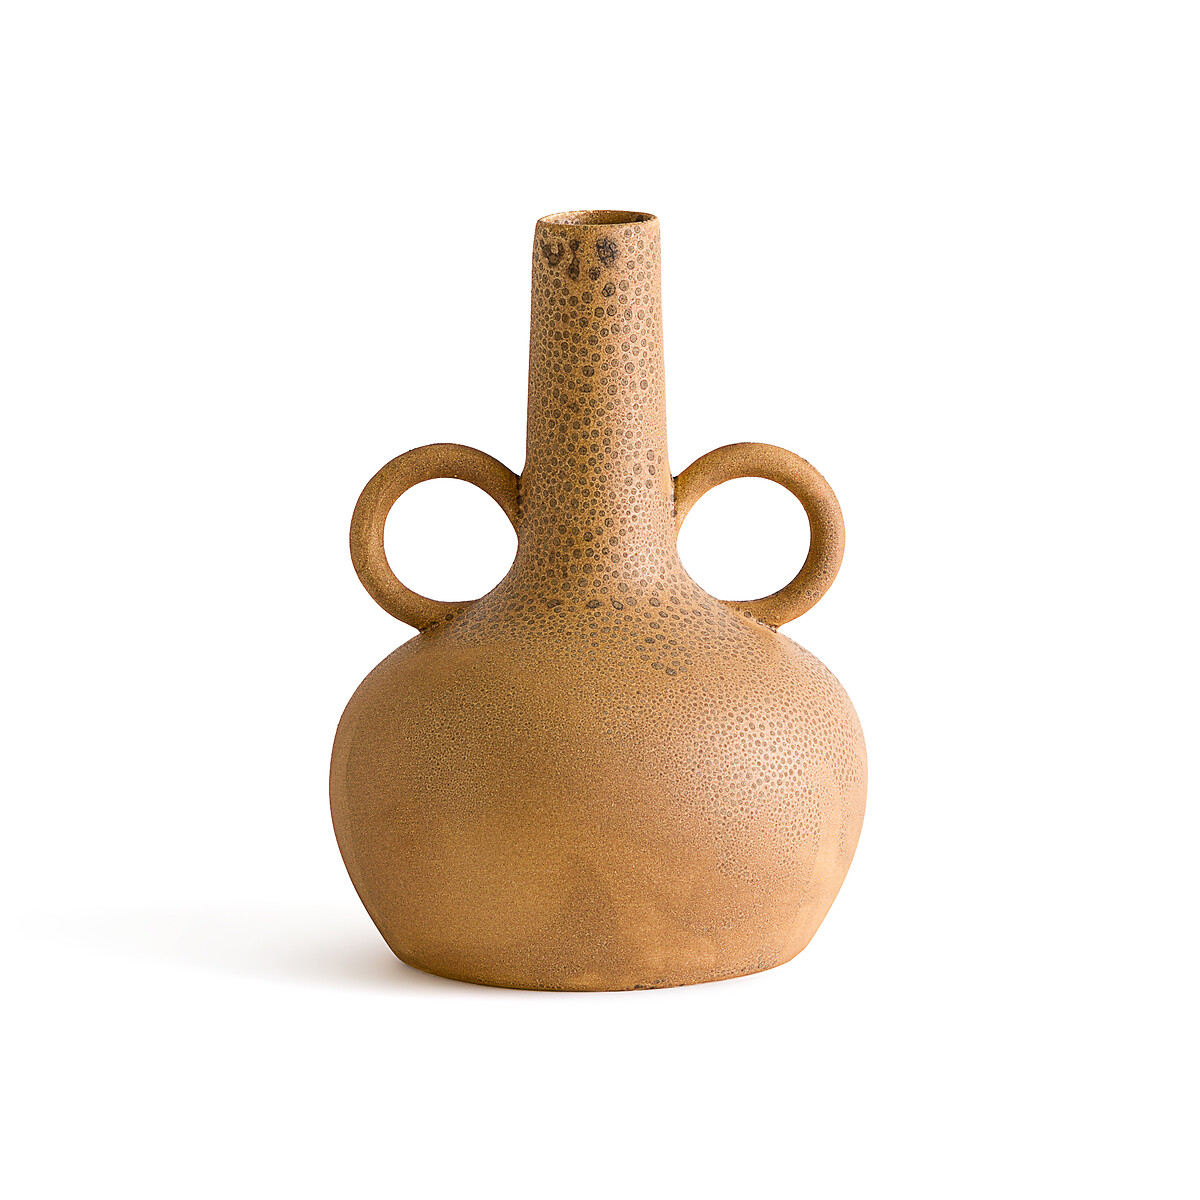 Kuza 29cm High Decorative Ceramic Vase